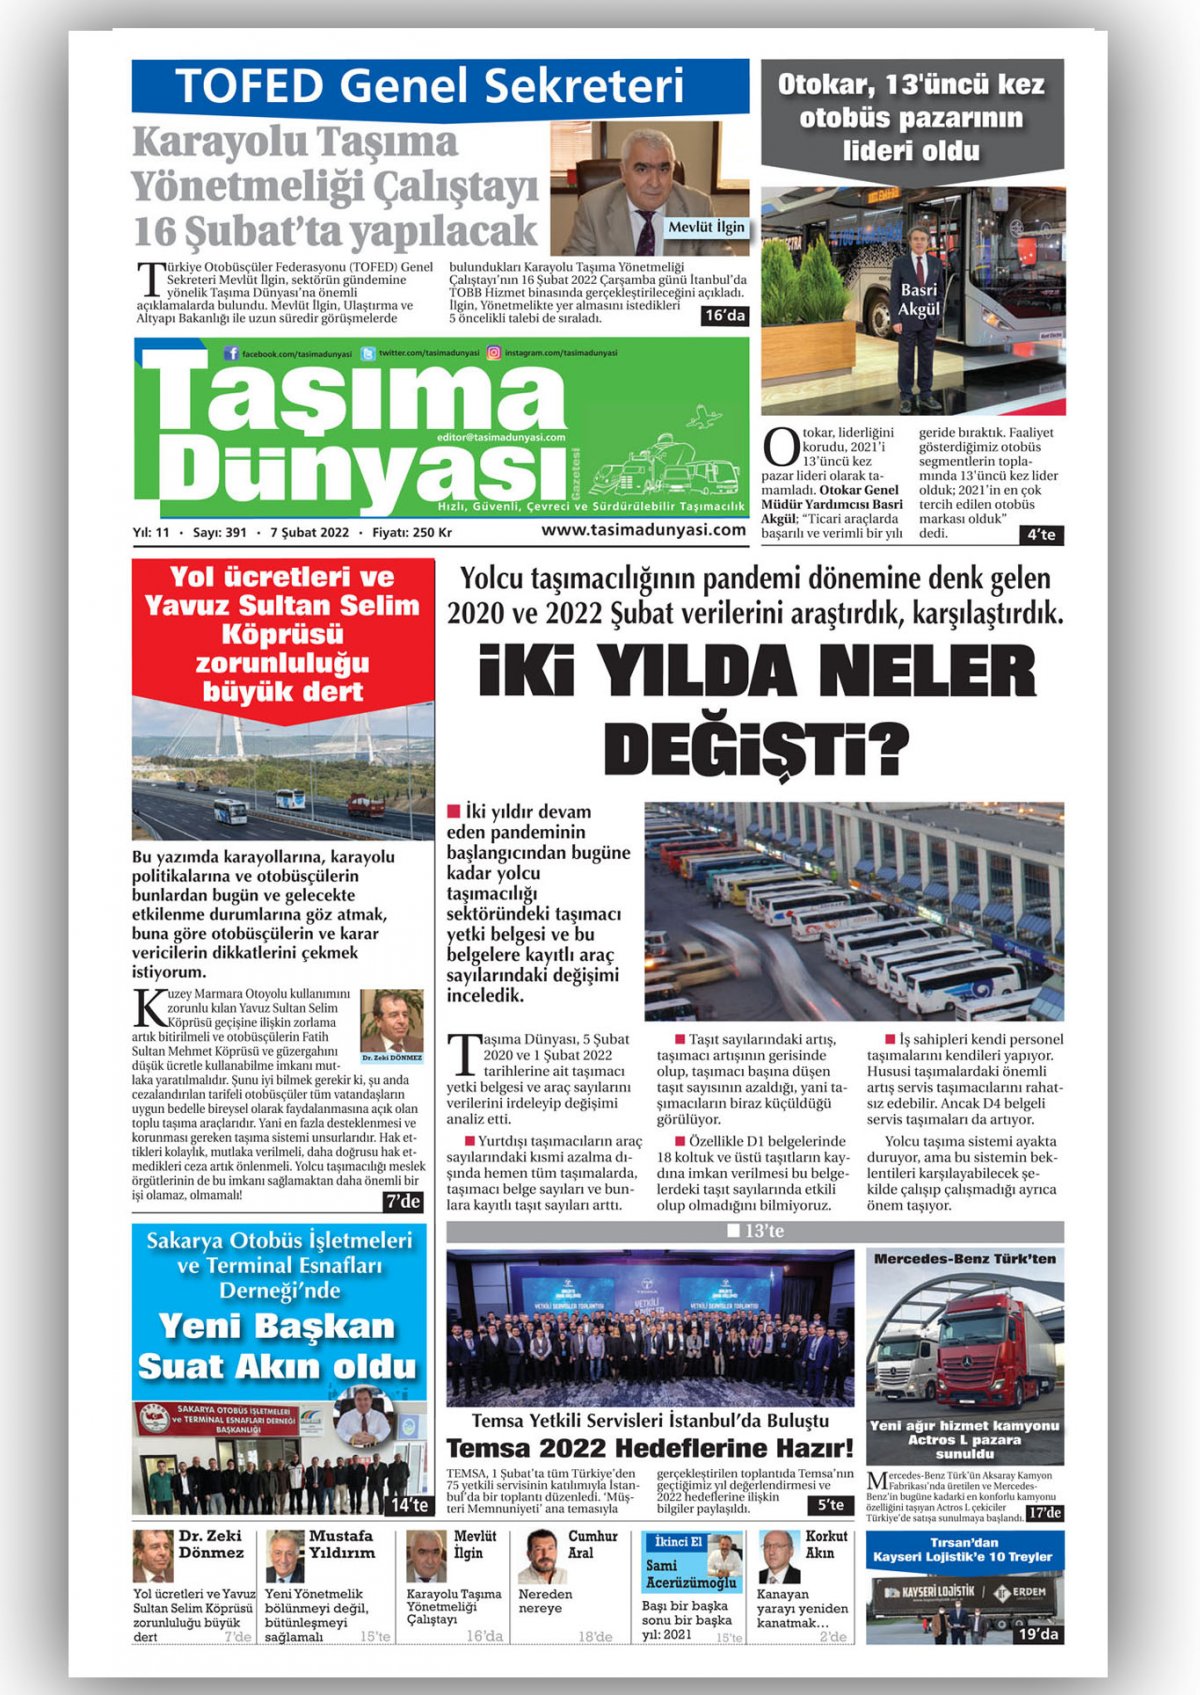 Taşıma Dünyası Gazetesi - 07.02.2022 Manşeti